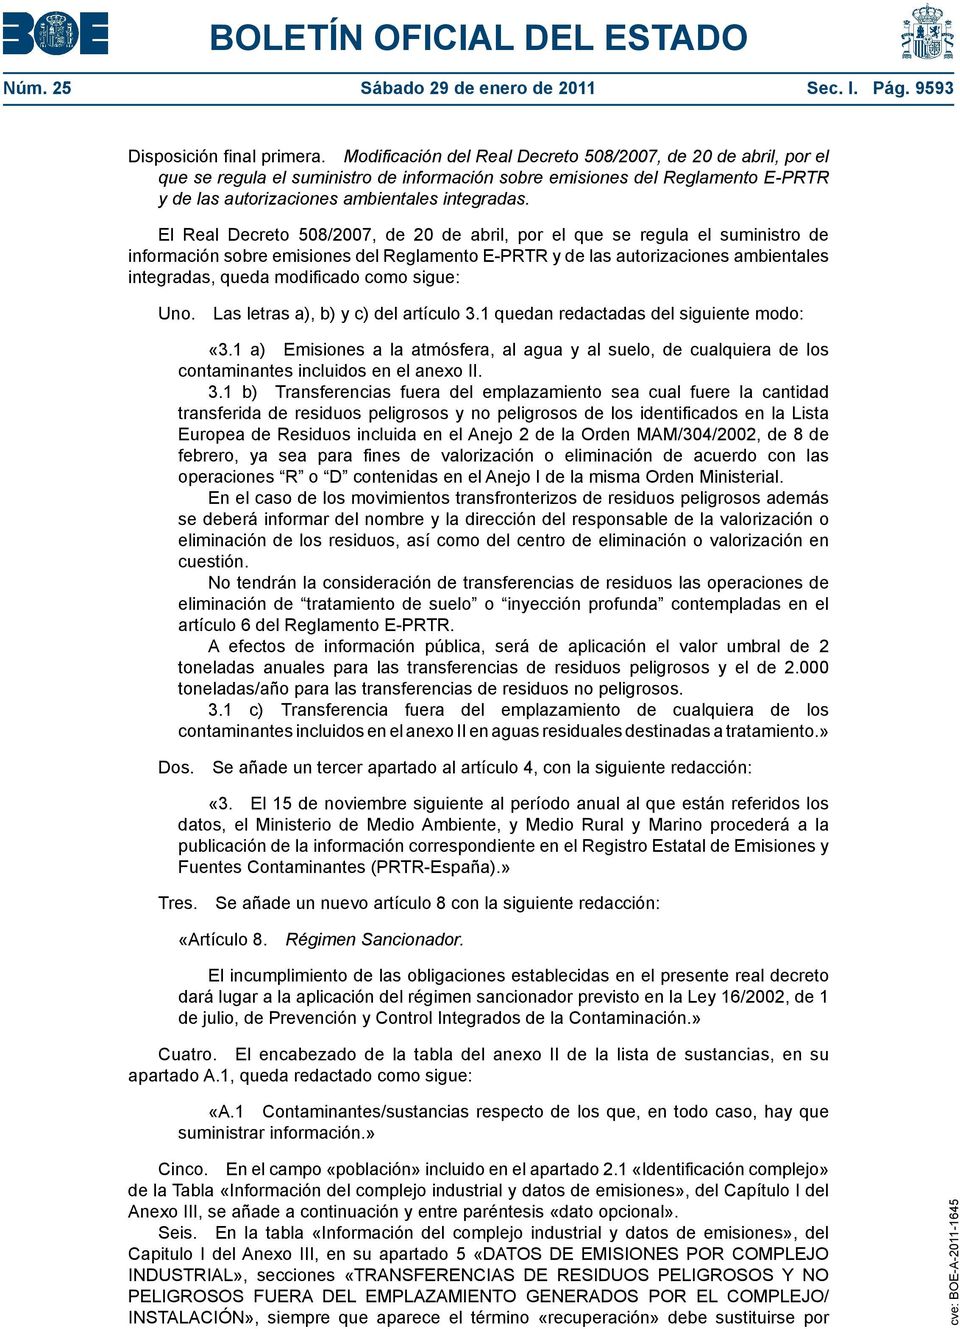 El Real Decreto 508/2007, de 20 de abril, por el que se regula el suministro de información sobre emisiones del Reglamento E-PRTR y de las autorizaciones ambientales integradas, queda modificado como